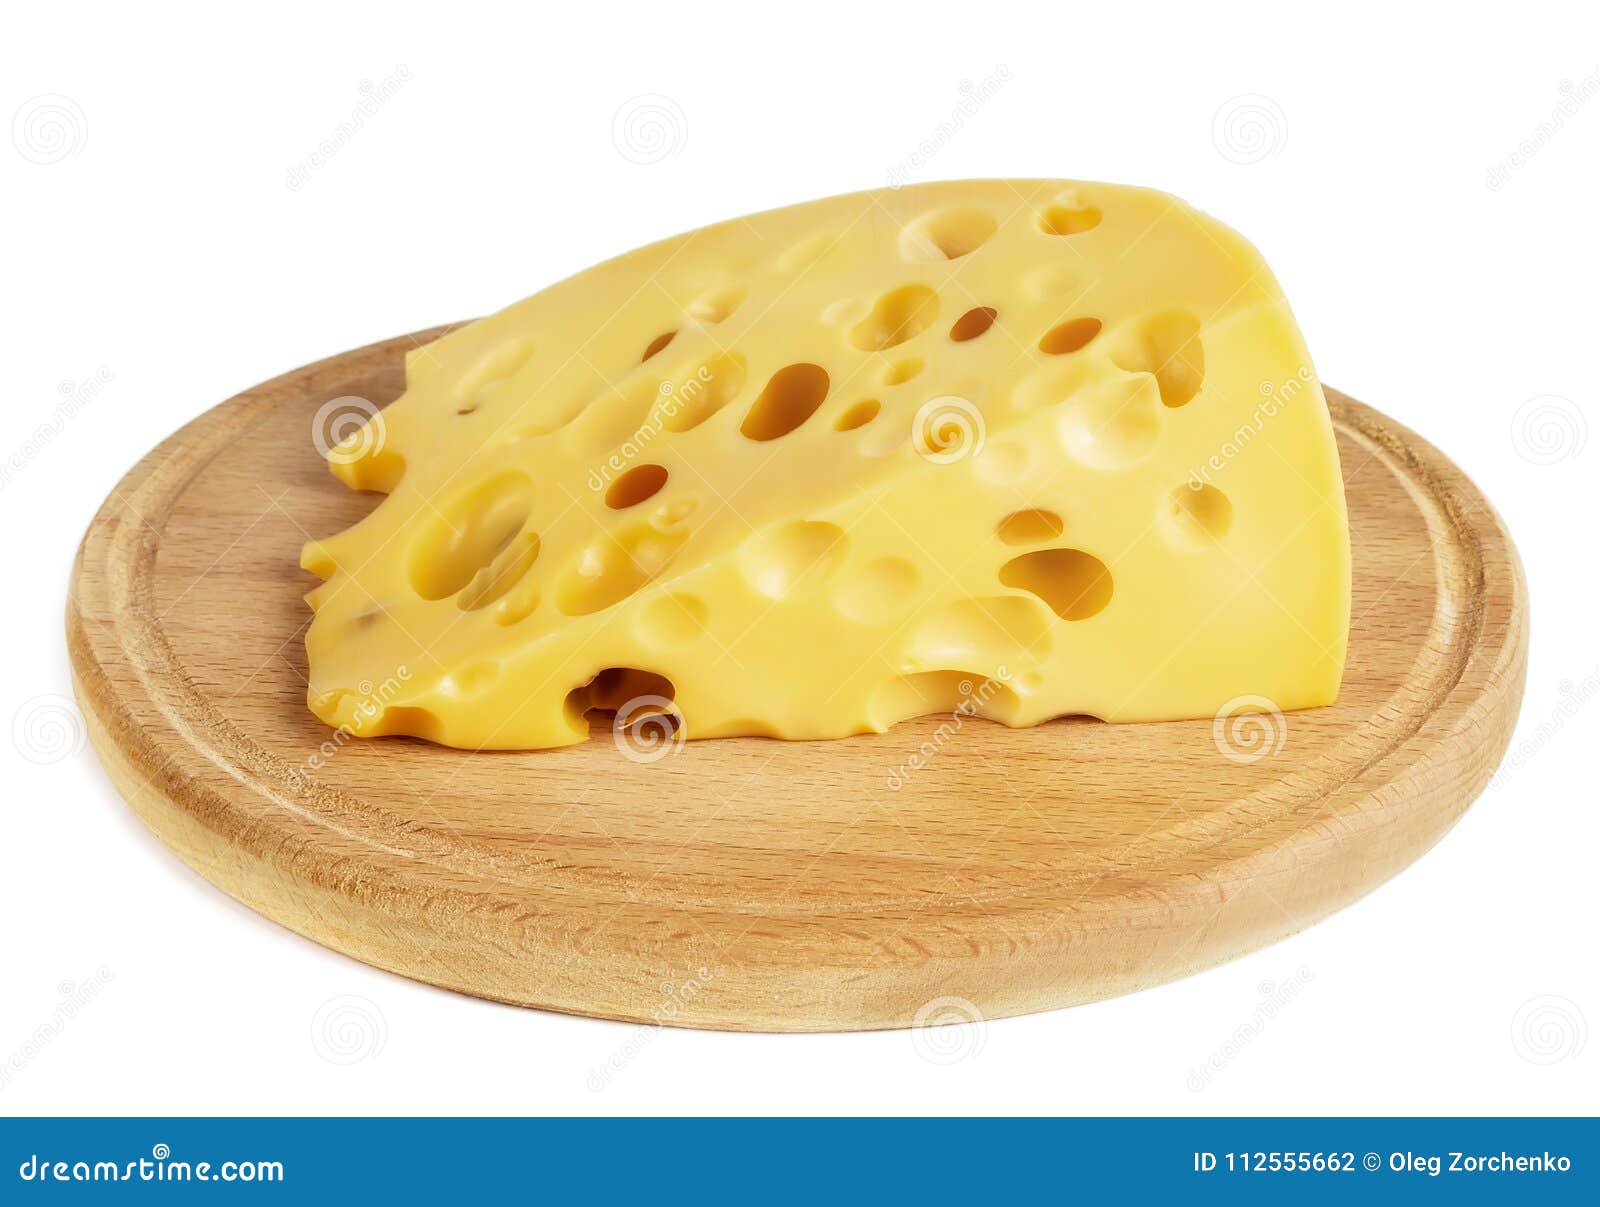 Сыр з дырочками. Сыр с дырочками. Сыр с крупными дырками. Сыр с маленькими дырочками. Большой кусок сыра.